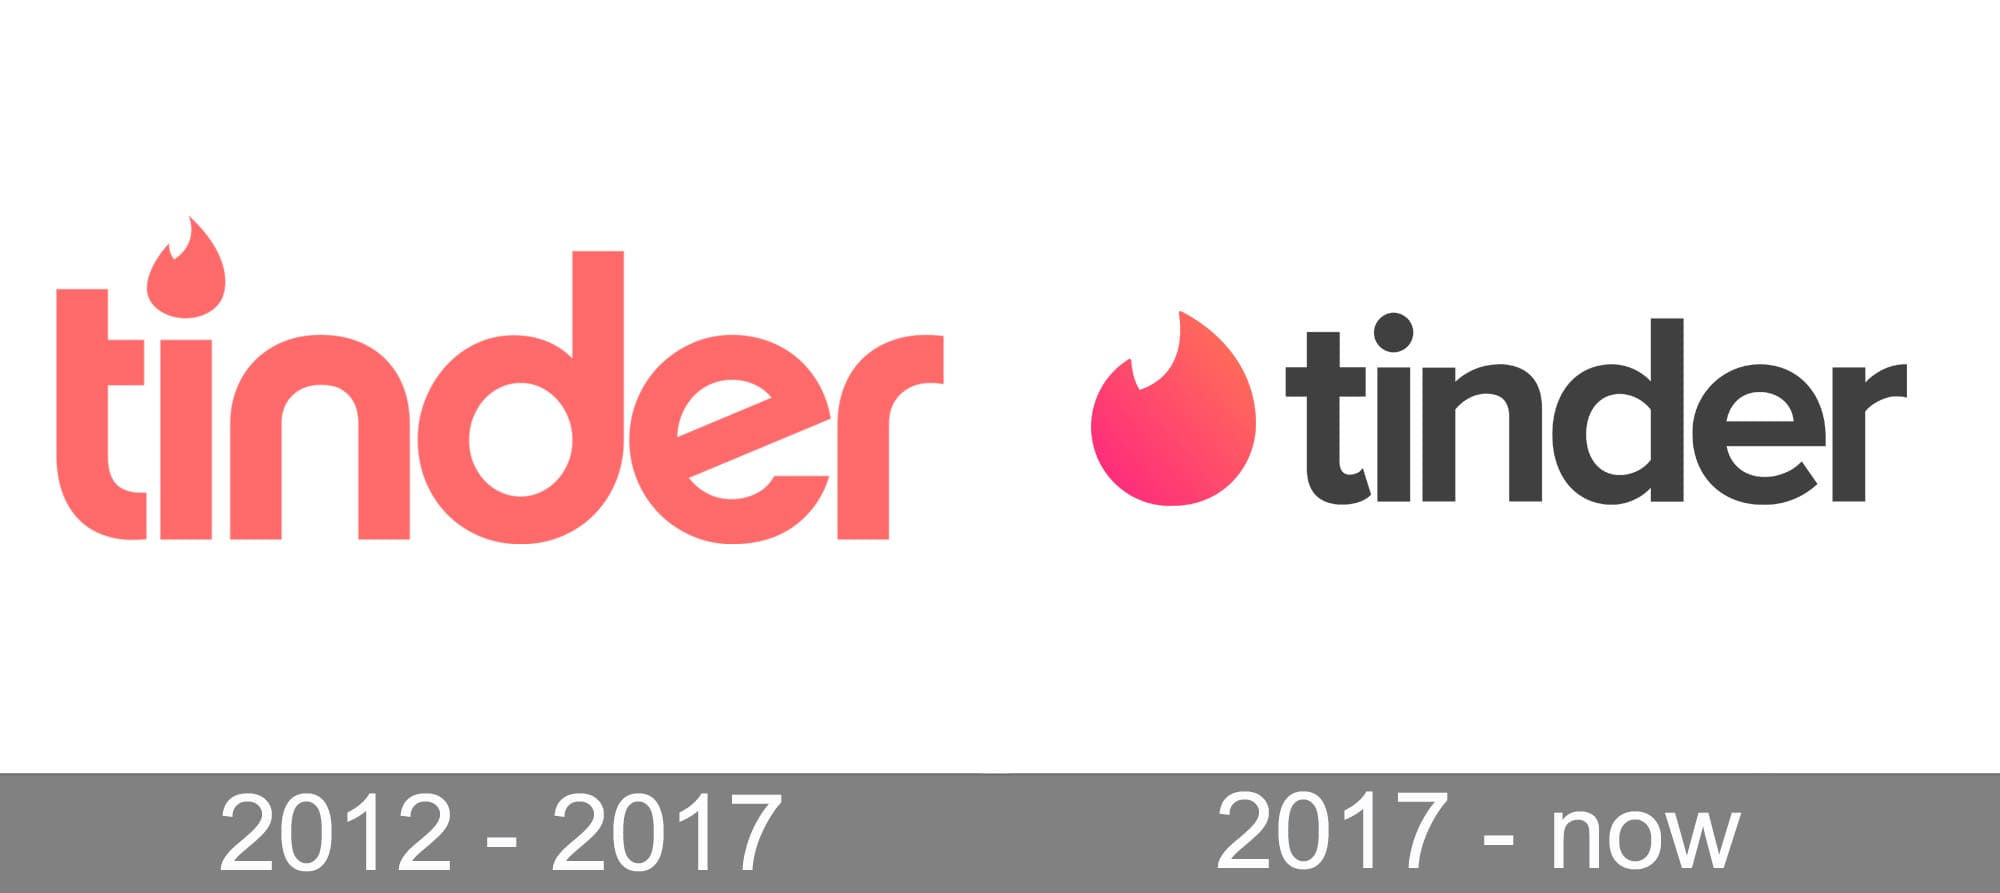 App keeps flashing logo tinder Does Tinder